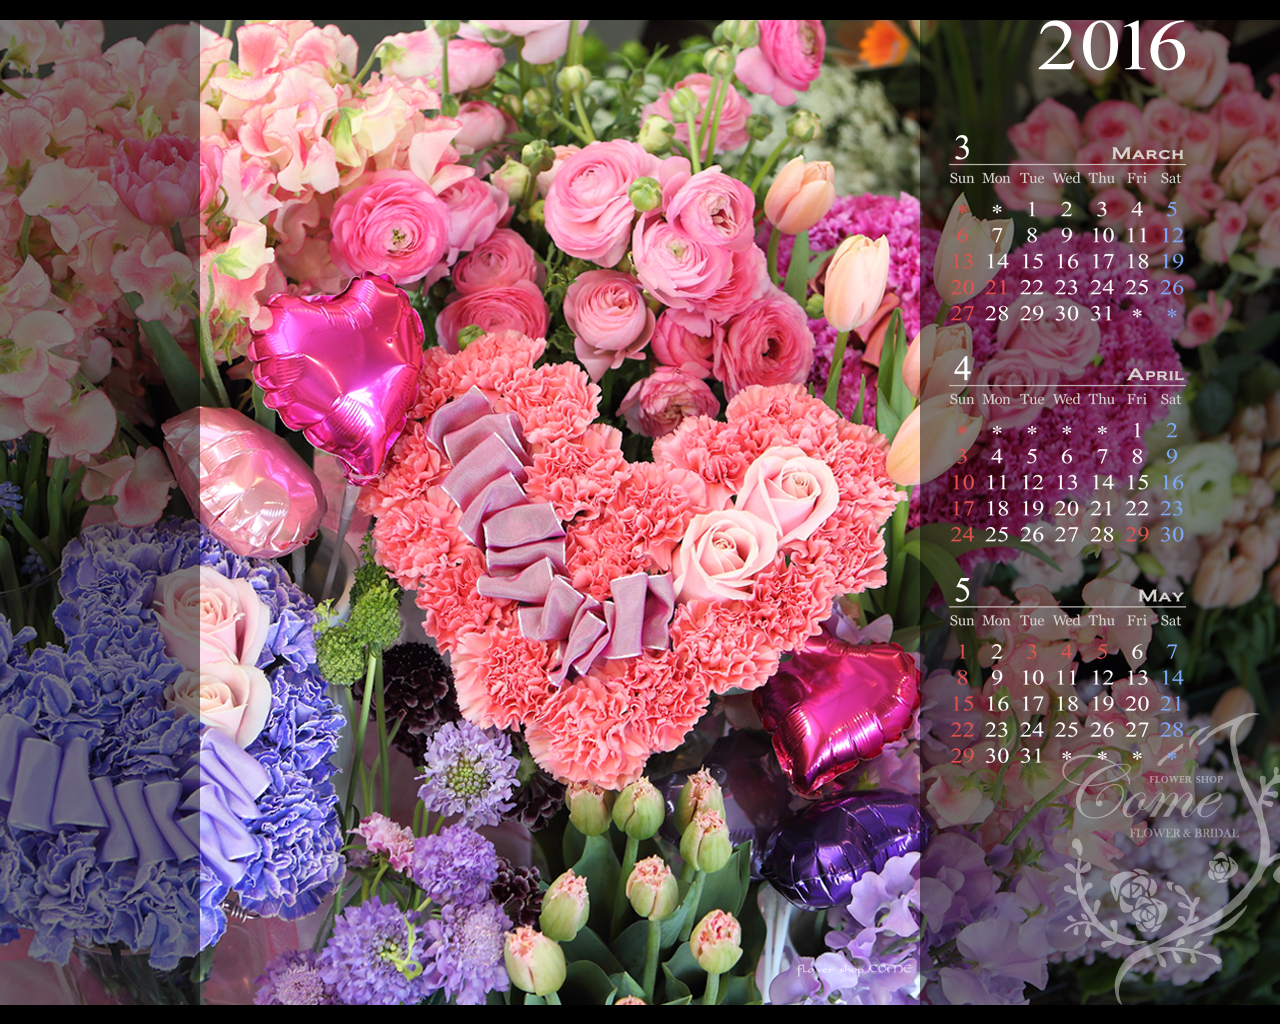 16年壁紙カレンダープレゼント 無料 花の写真を使った壁紙カレンダーを無料でダウンロード フラワーショップ花夢